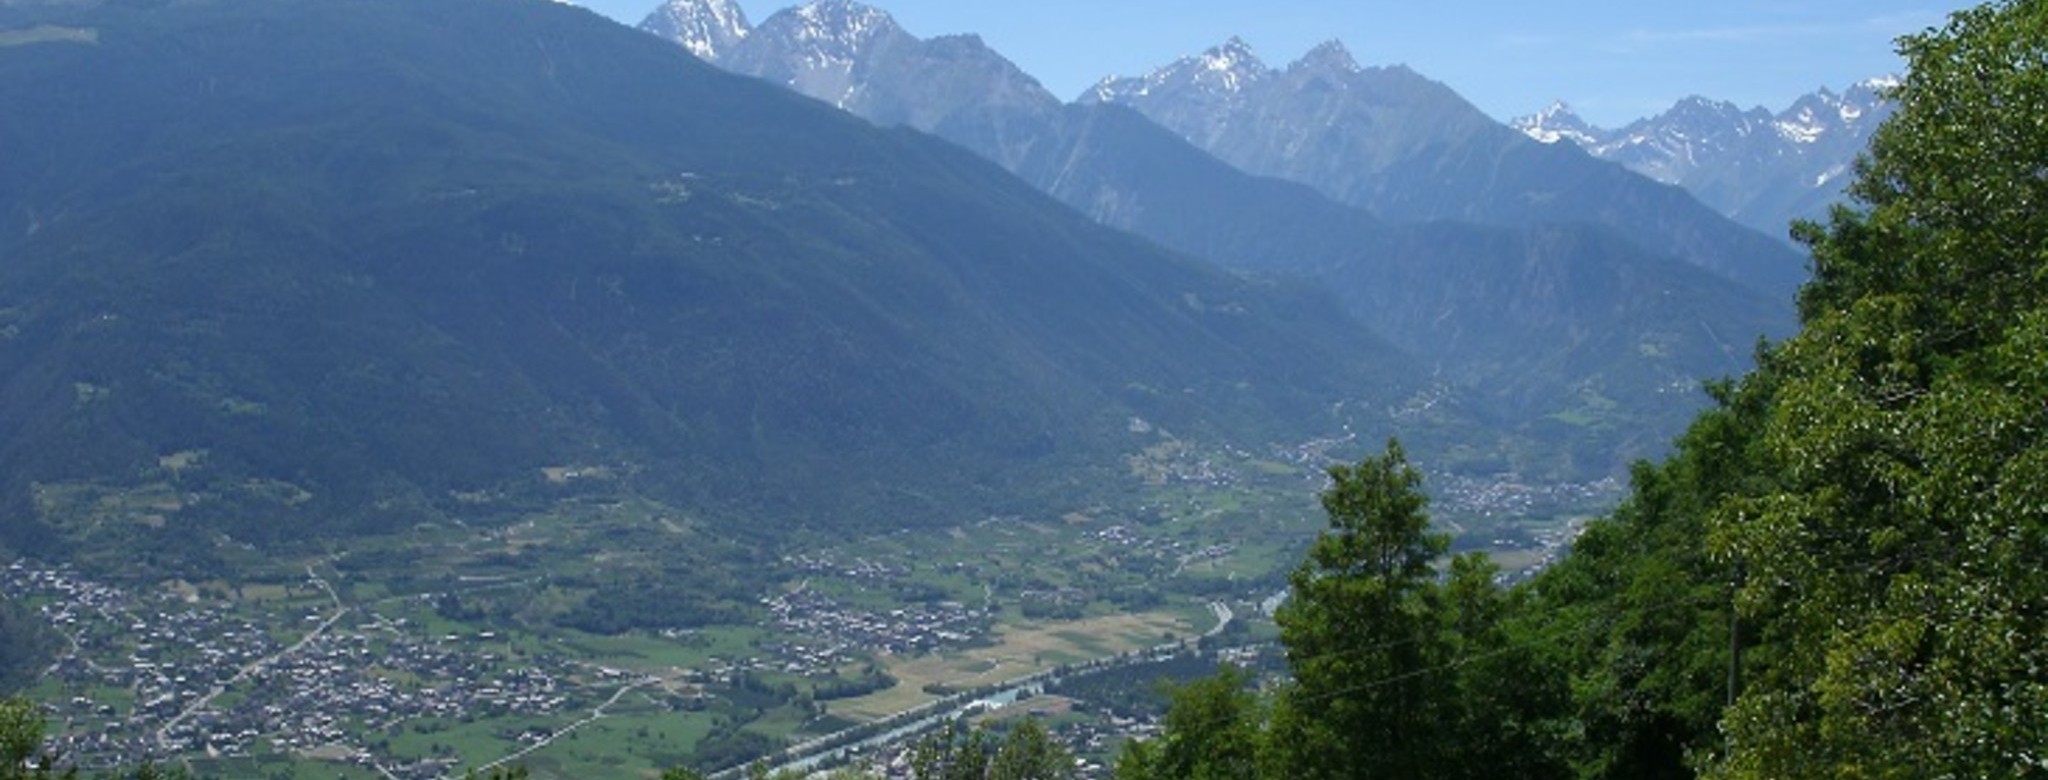 Tiefblicke ins Aostatal von der Route des Salasses.